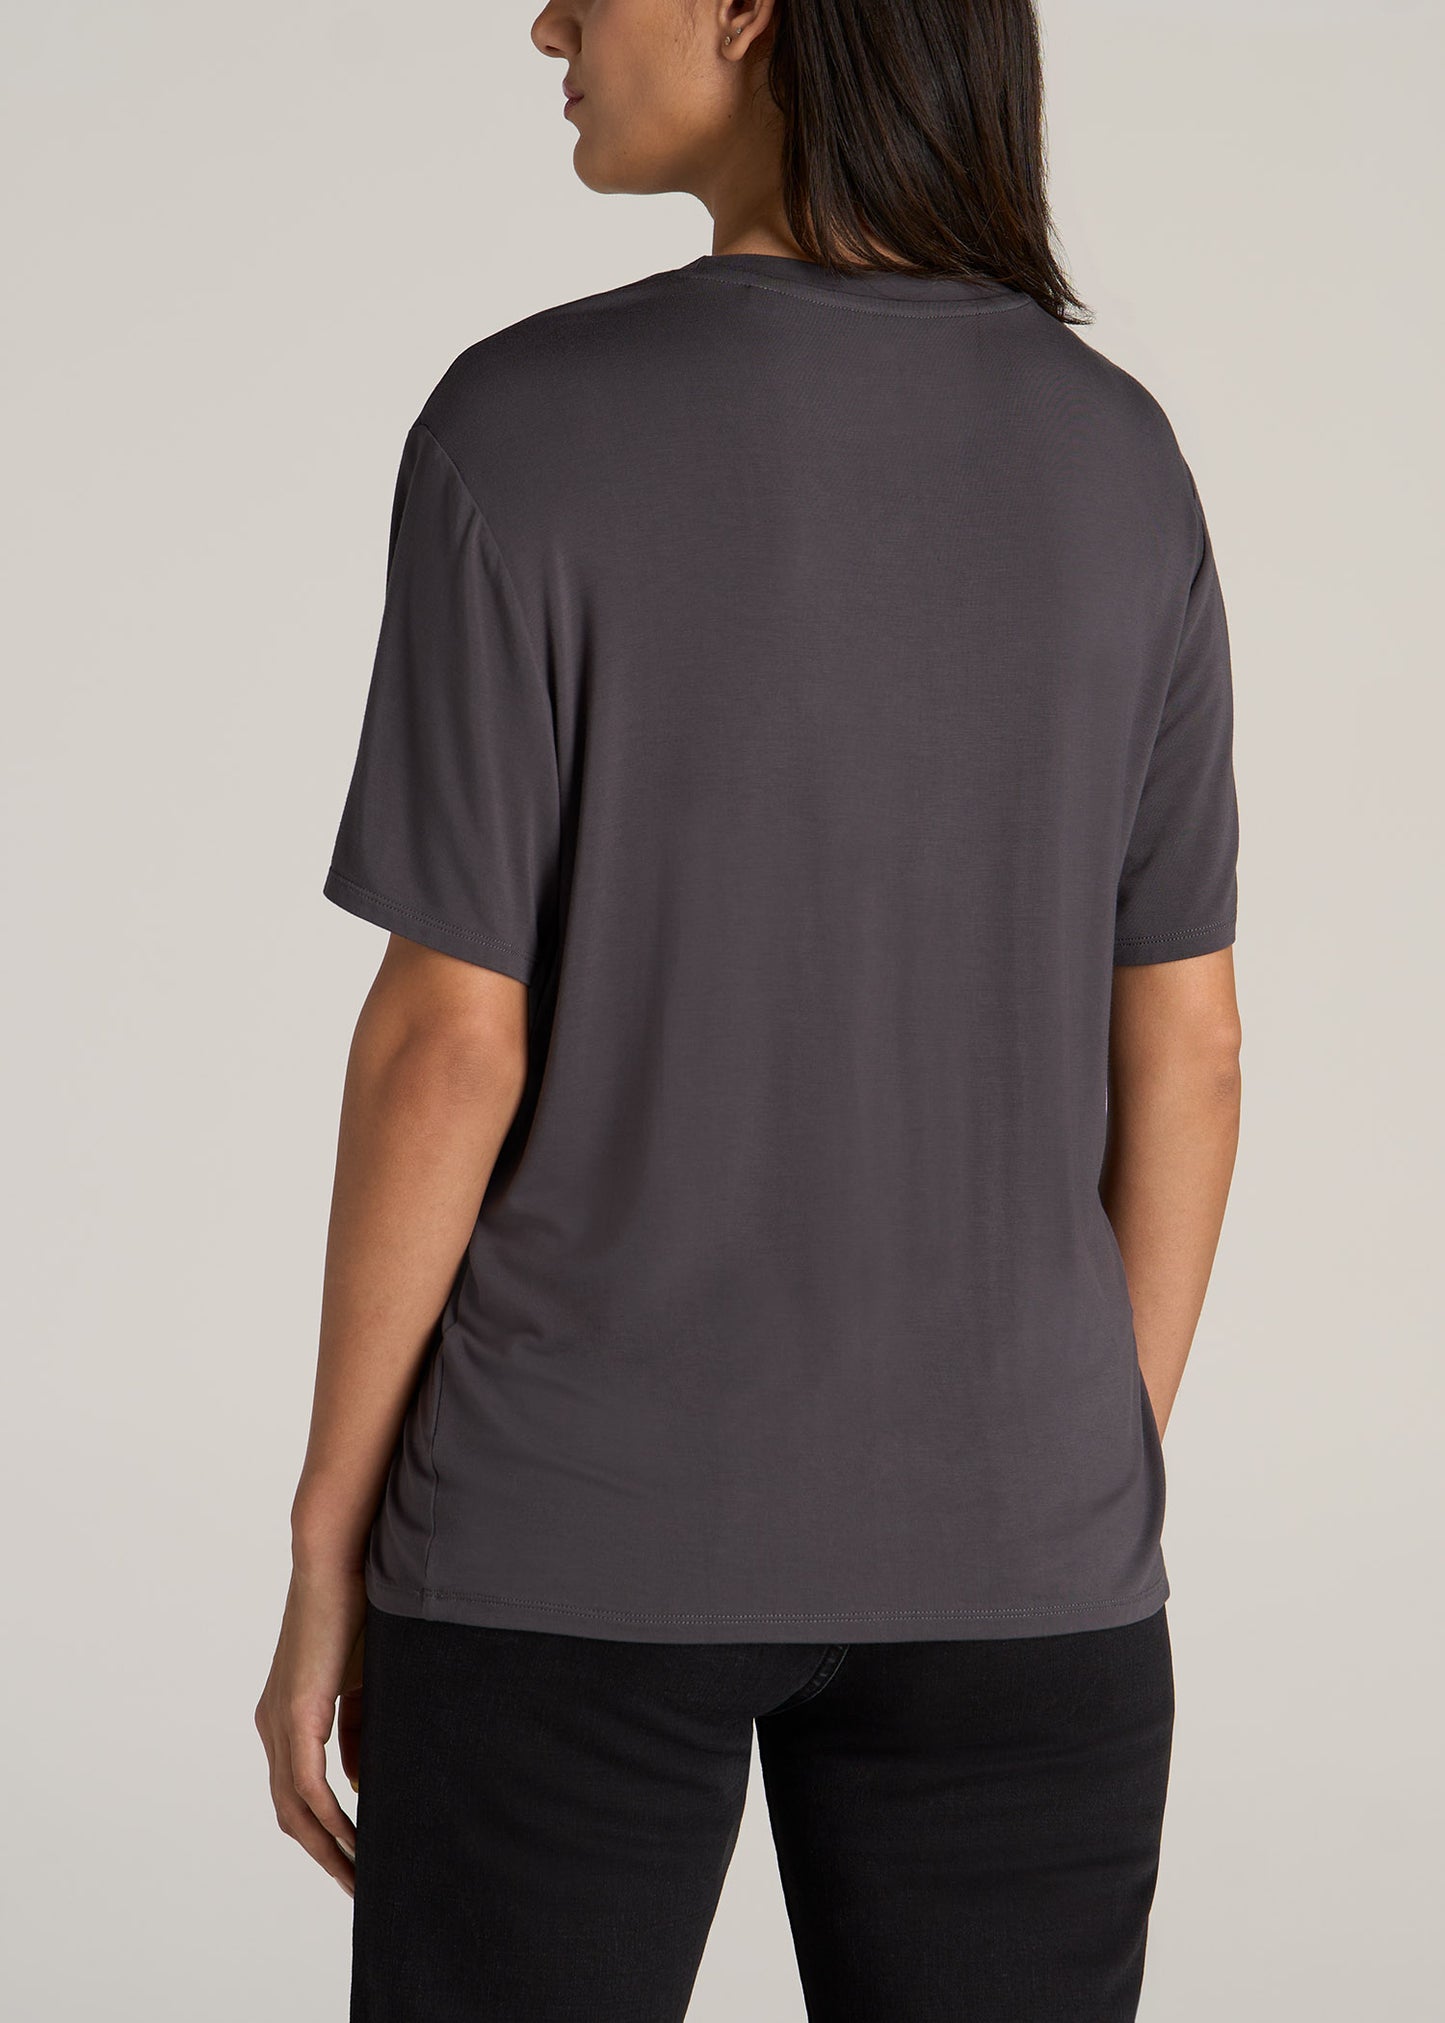 Cathalem Womens Oversized T Shirts Crewneck Short Sleeve Casual